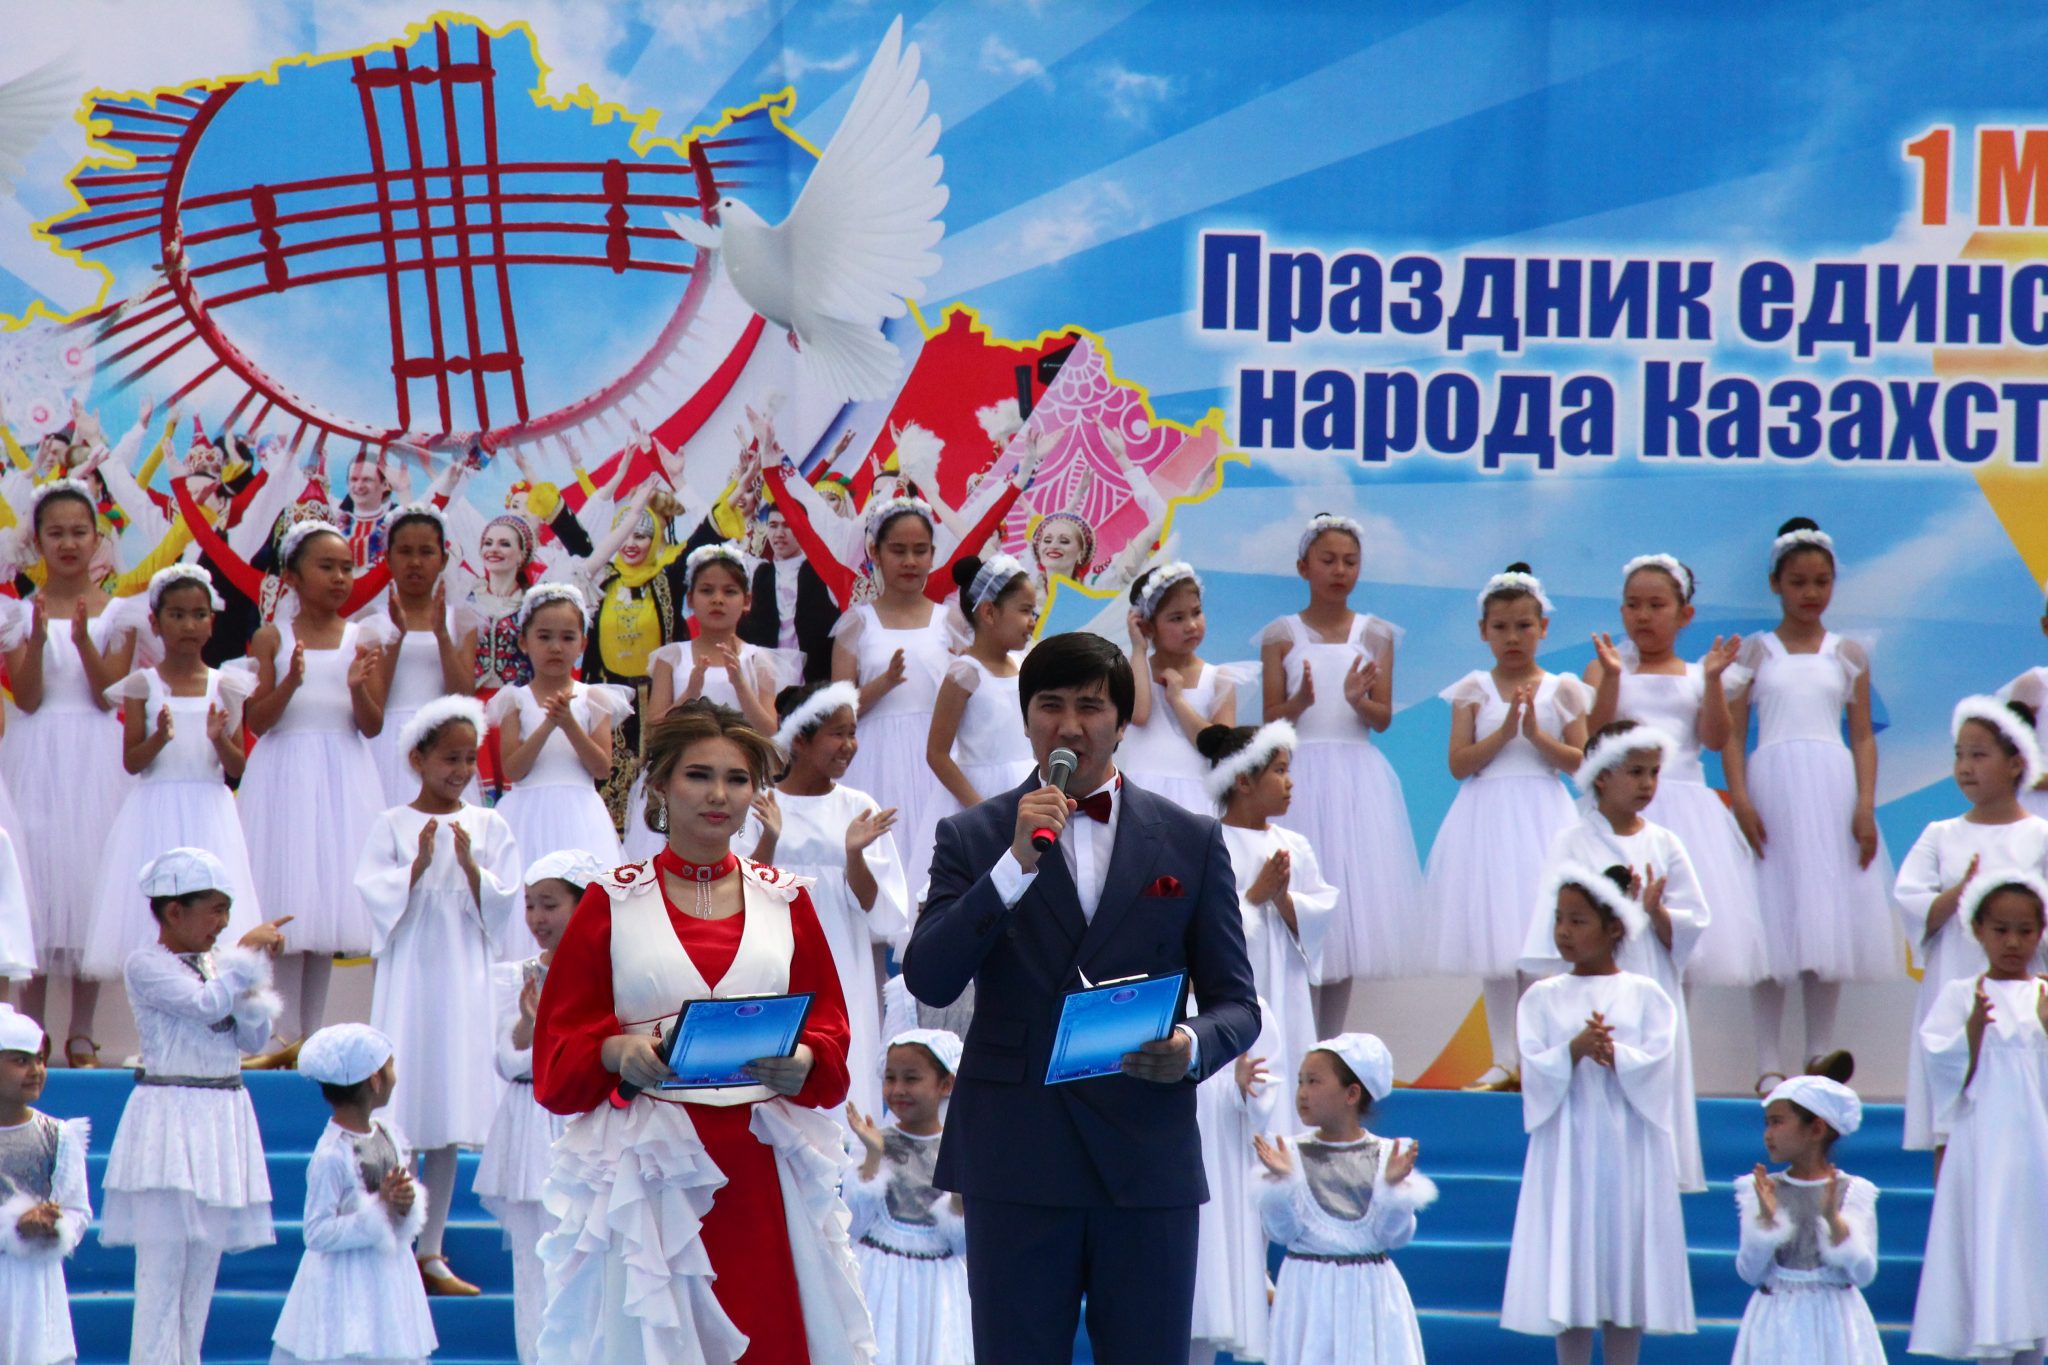 дружба народов казахстана картинки